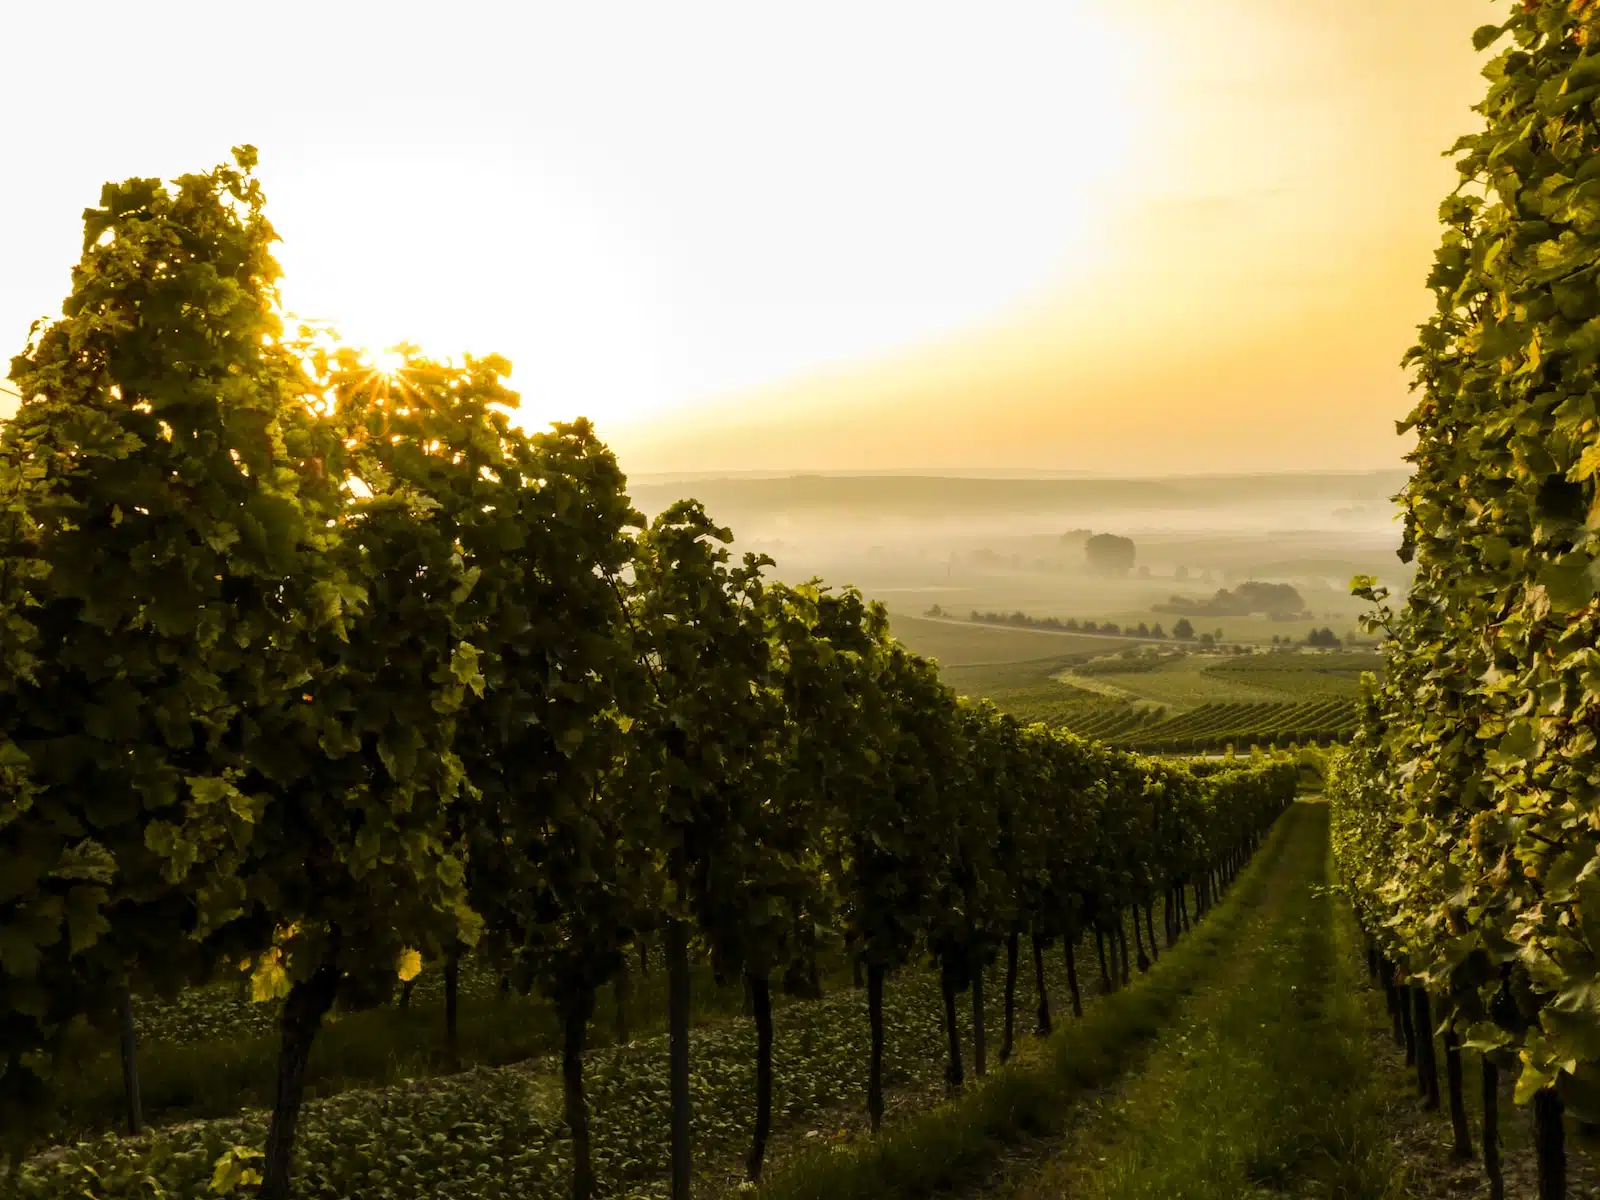 La vente à la propriété de vins : qualité et saveurs authentiques